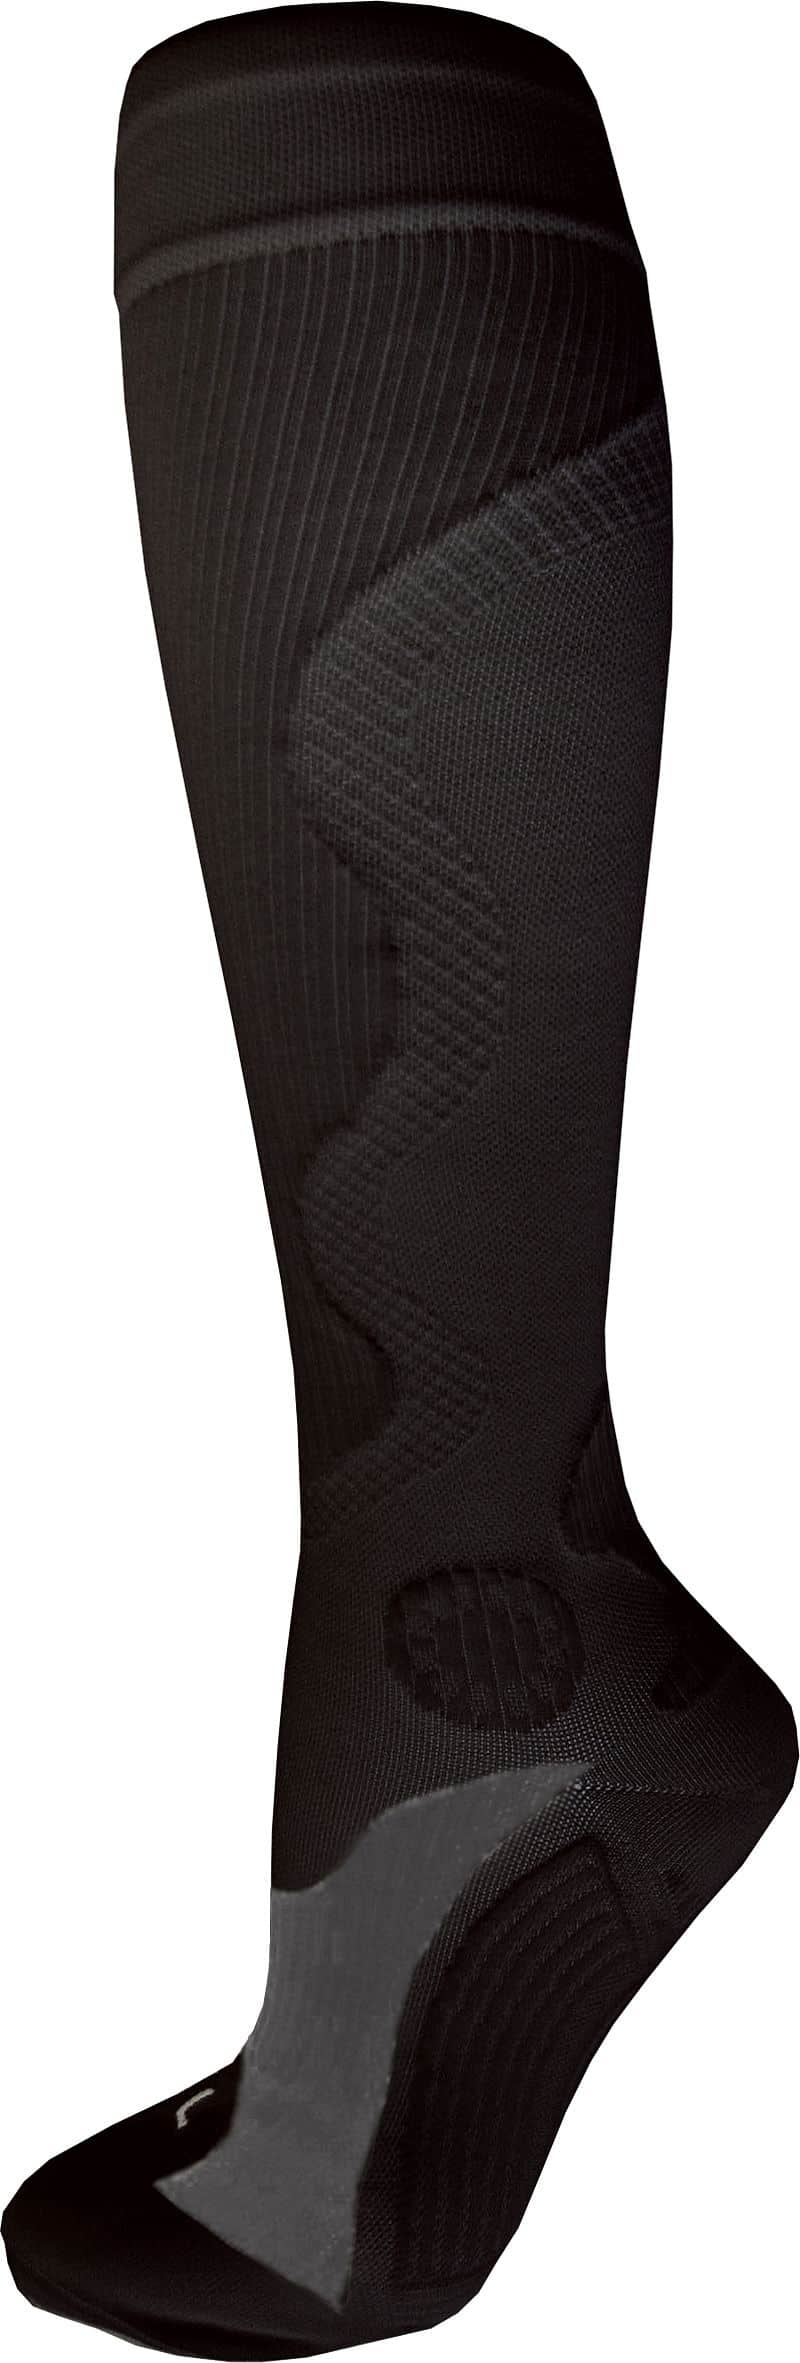 Kompresní sportovní ponožky WAVE, černé Bota velikost: L